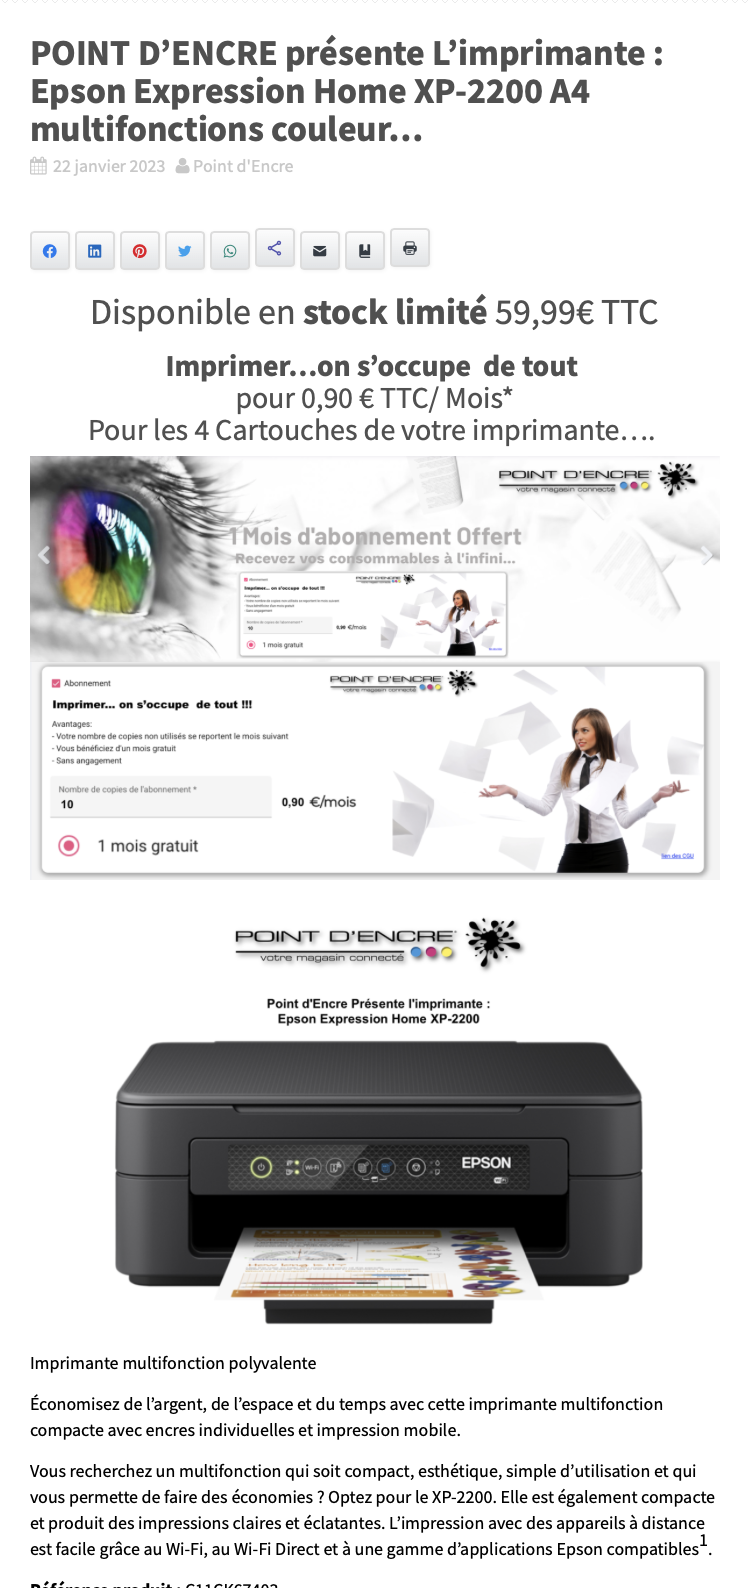 POINT D’ENCRE présente L’imprimante : Epson Expression Home XP-2200 A4 multifonctions couleur…